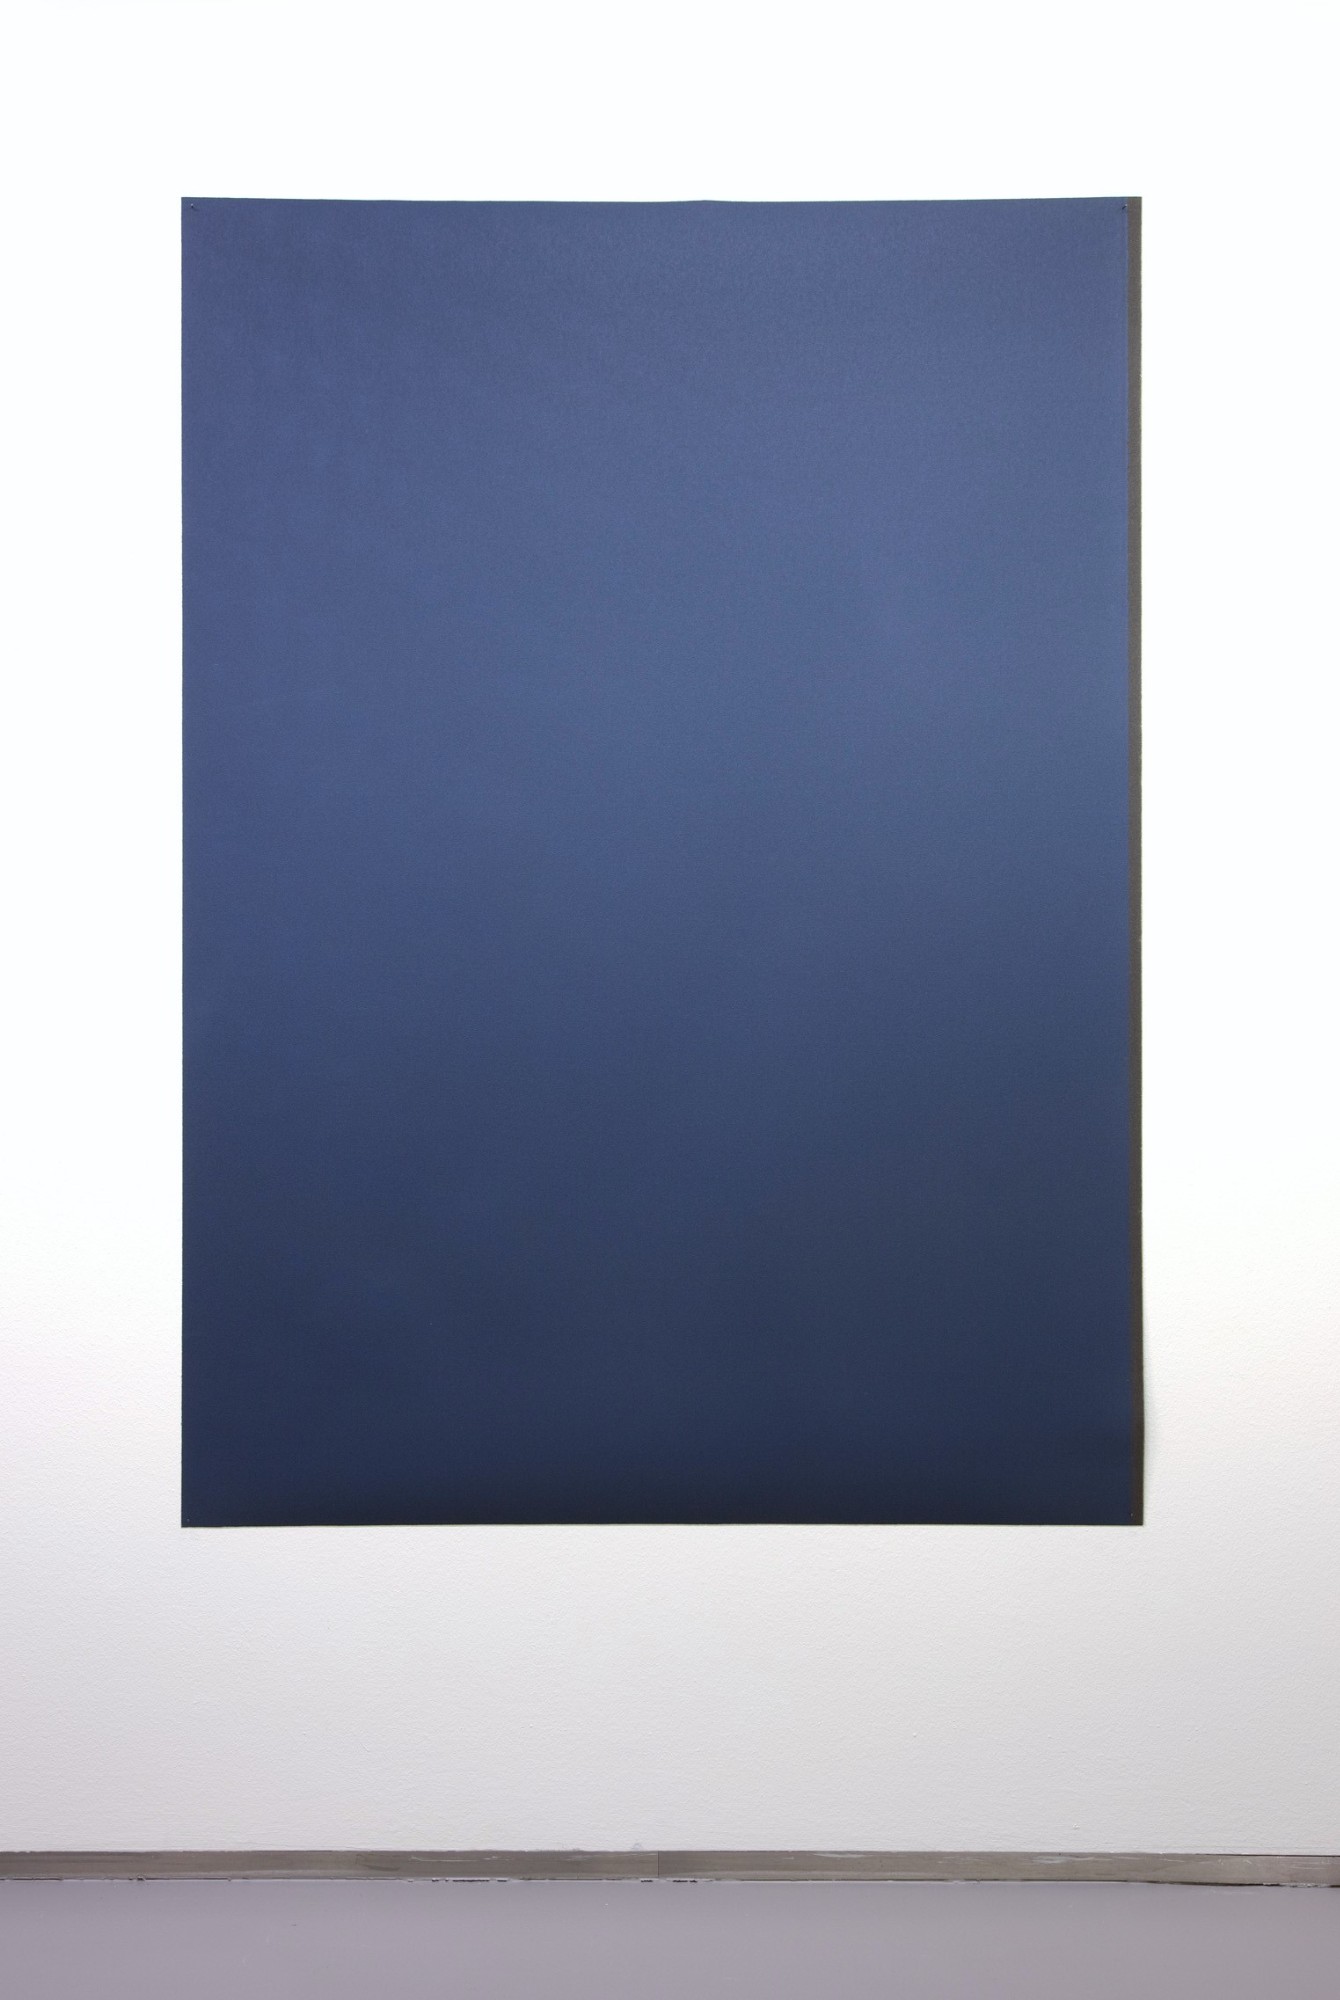 Tobias Hantmann, Pistill der Iris, dunkelblau mit Streifen, fein, 2011, sandpaper, 182 x 131 cm